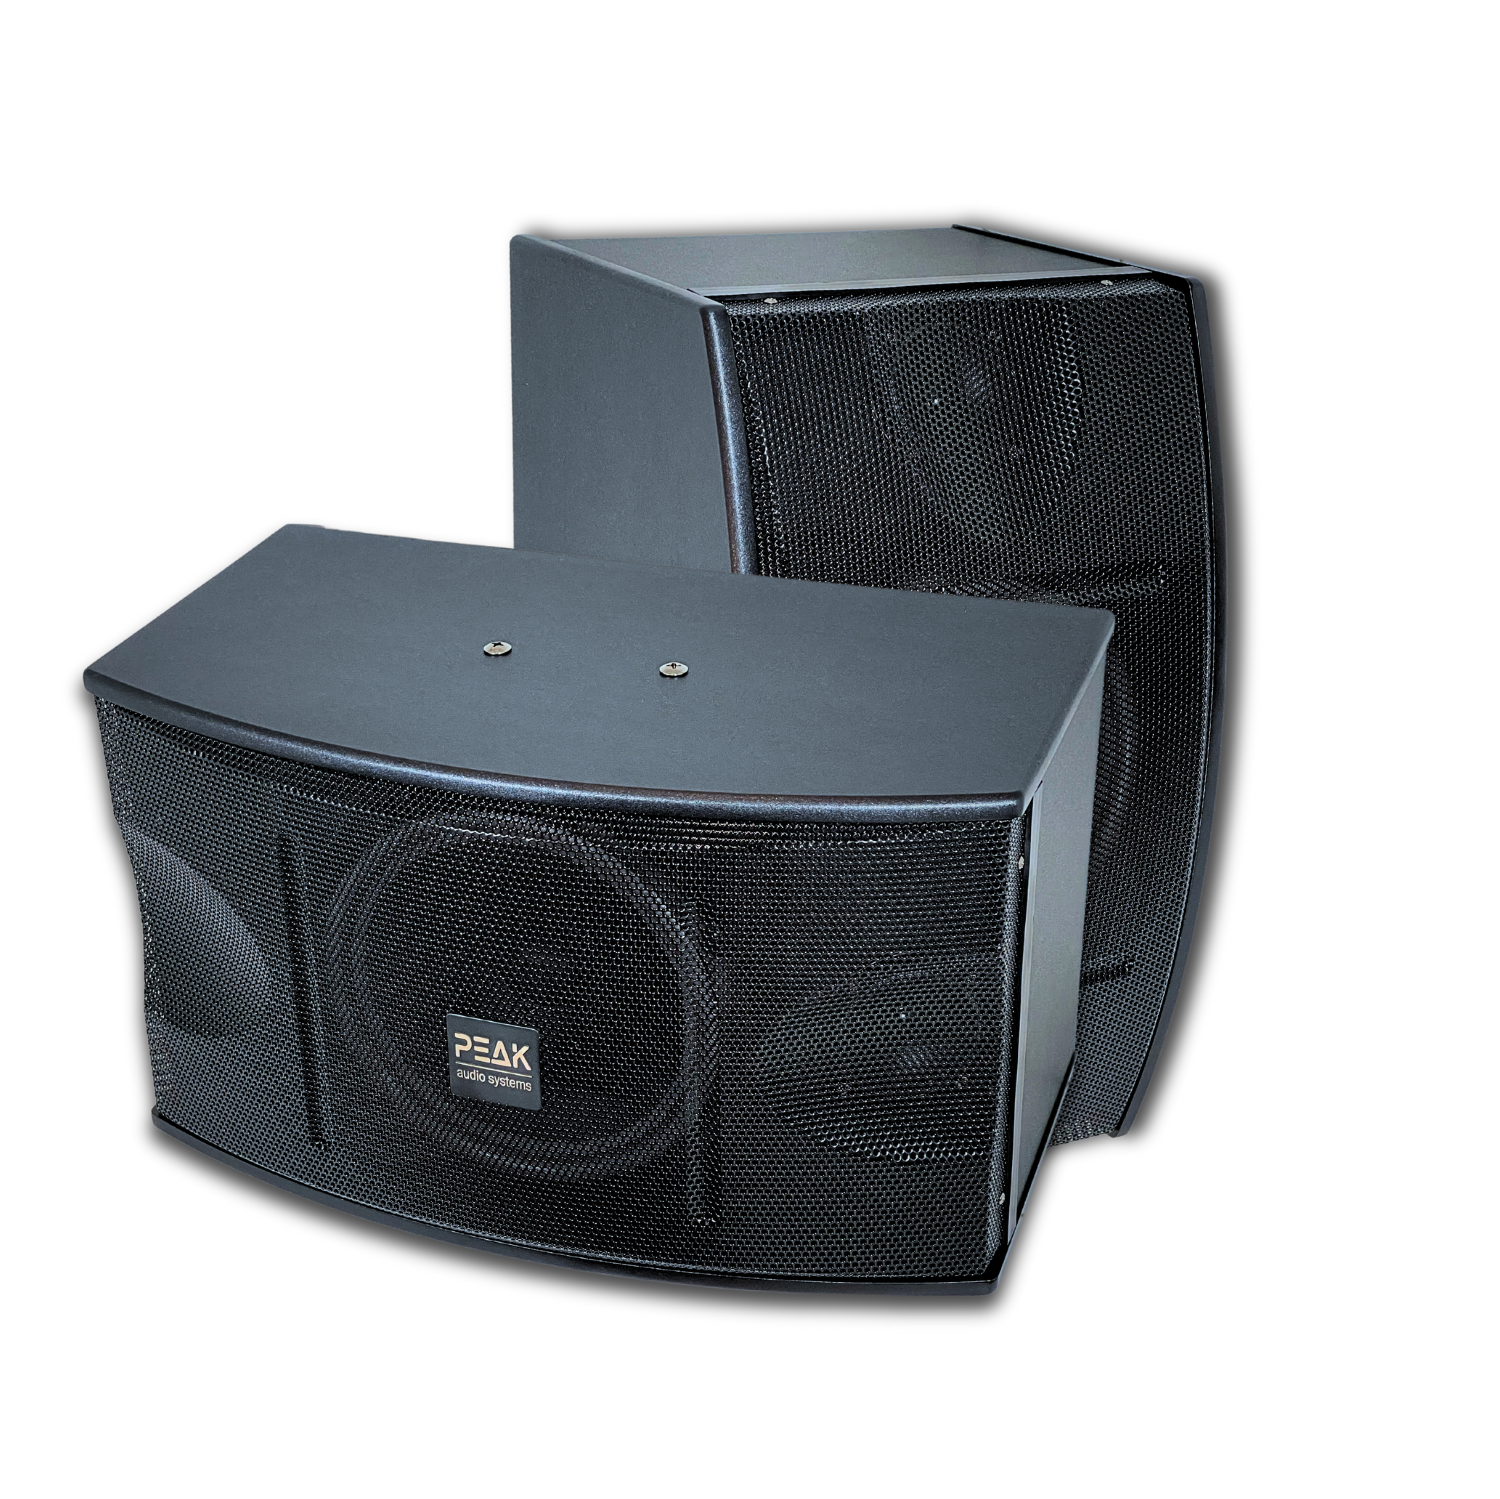 PEAK Karaoke Ultimate Speakers 10" Large Magnet Woofer with One 3" Mid Driver and One Tweeter per Speaker (Sold as a Pair) PK-SPK-002